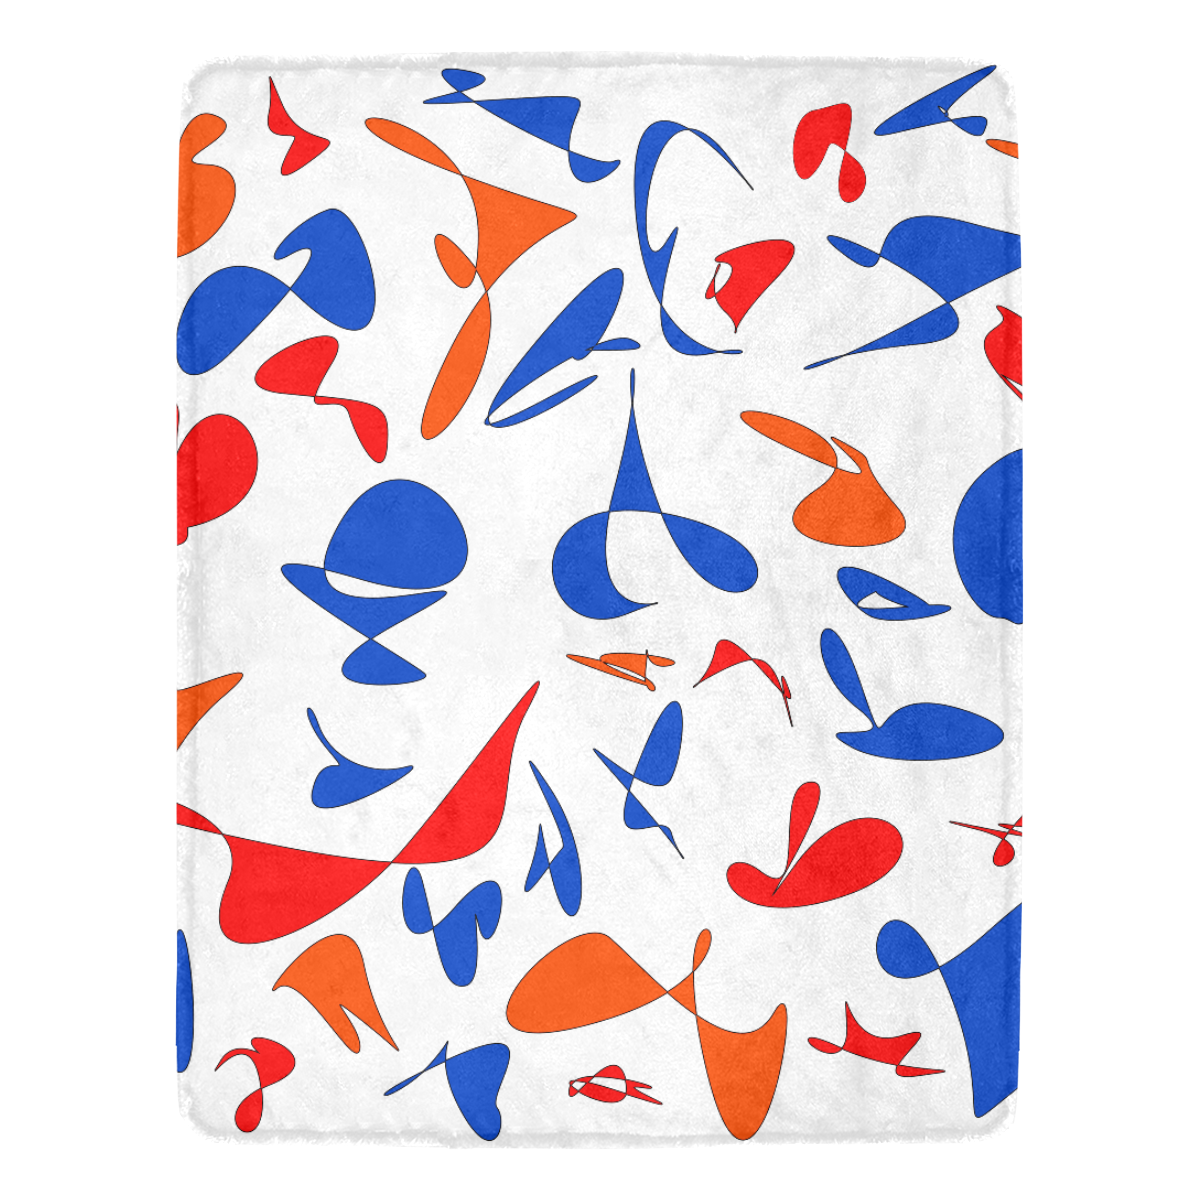 zappwaits ecstatic 4 Ultra-Soft Micro Fleece Blanket 54''x70''